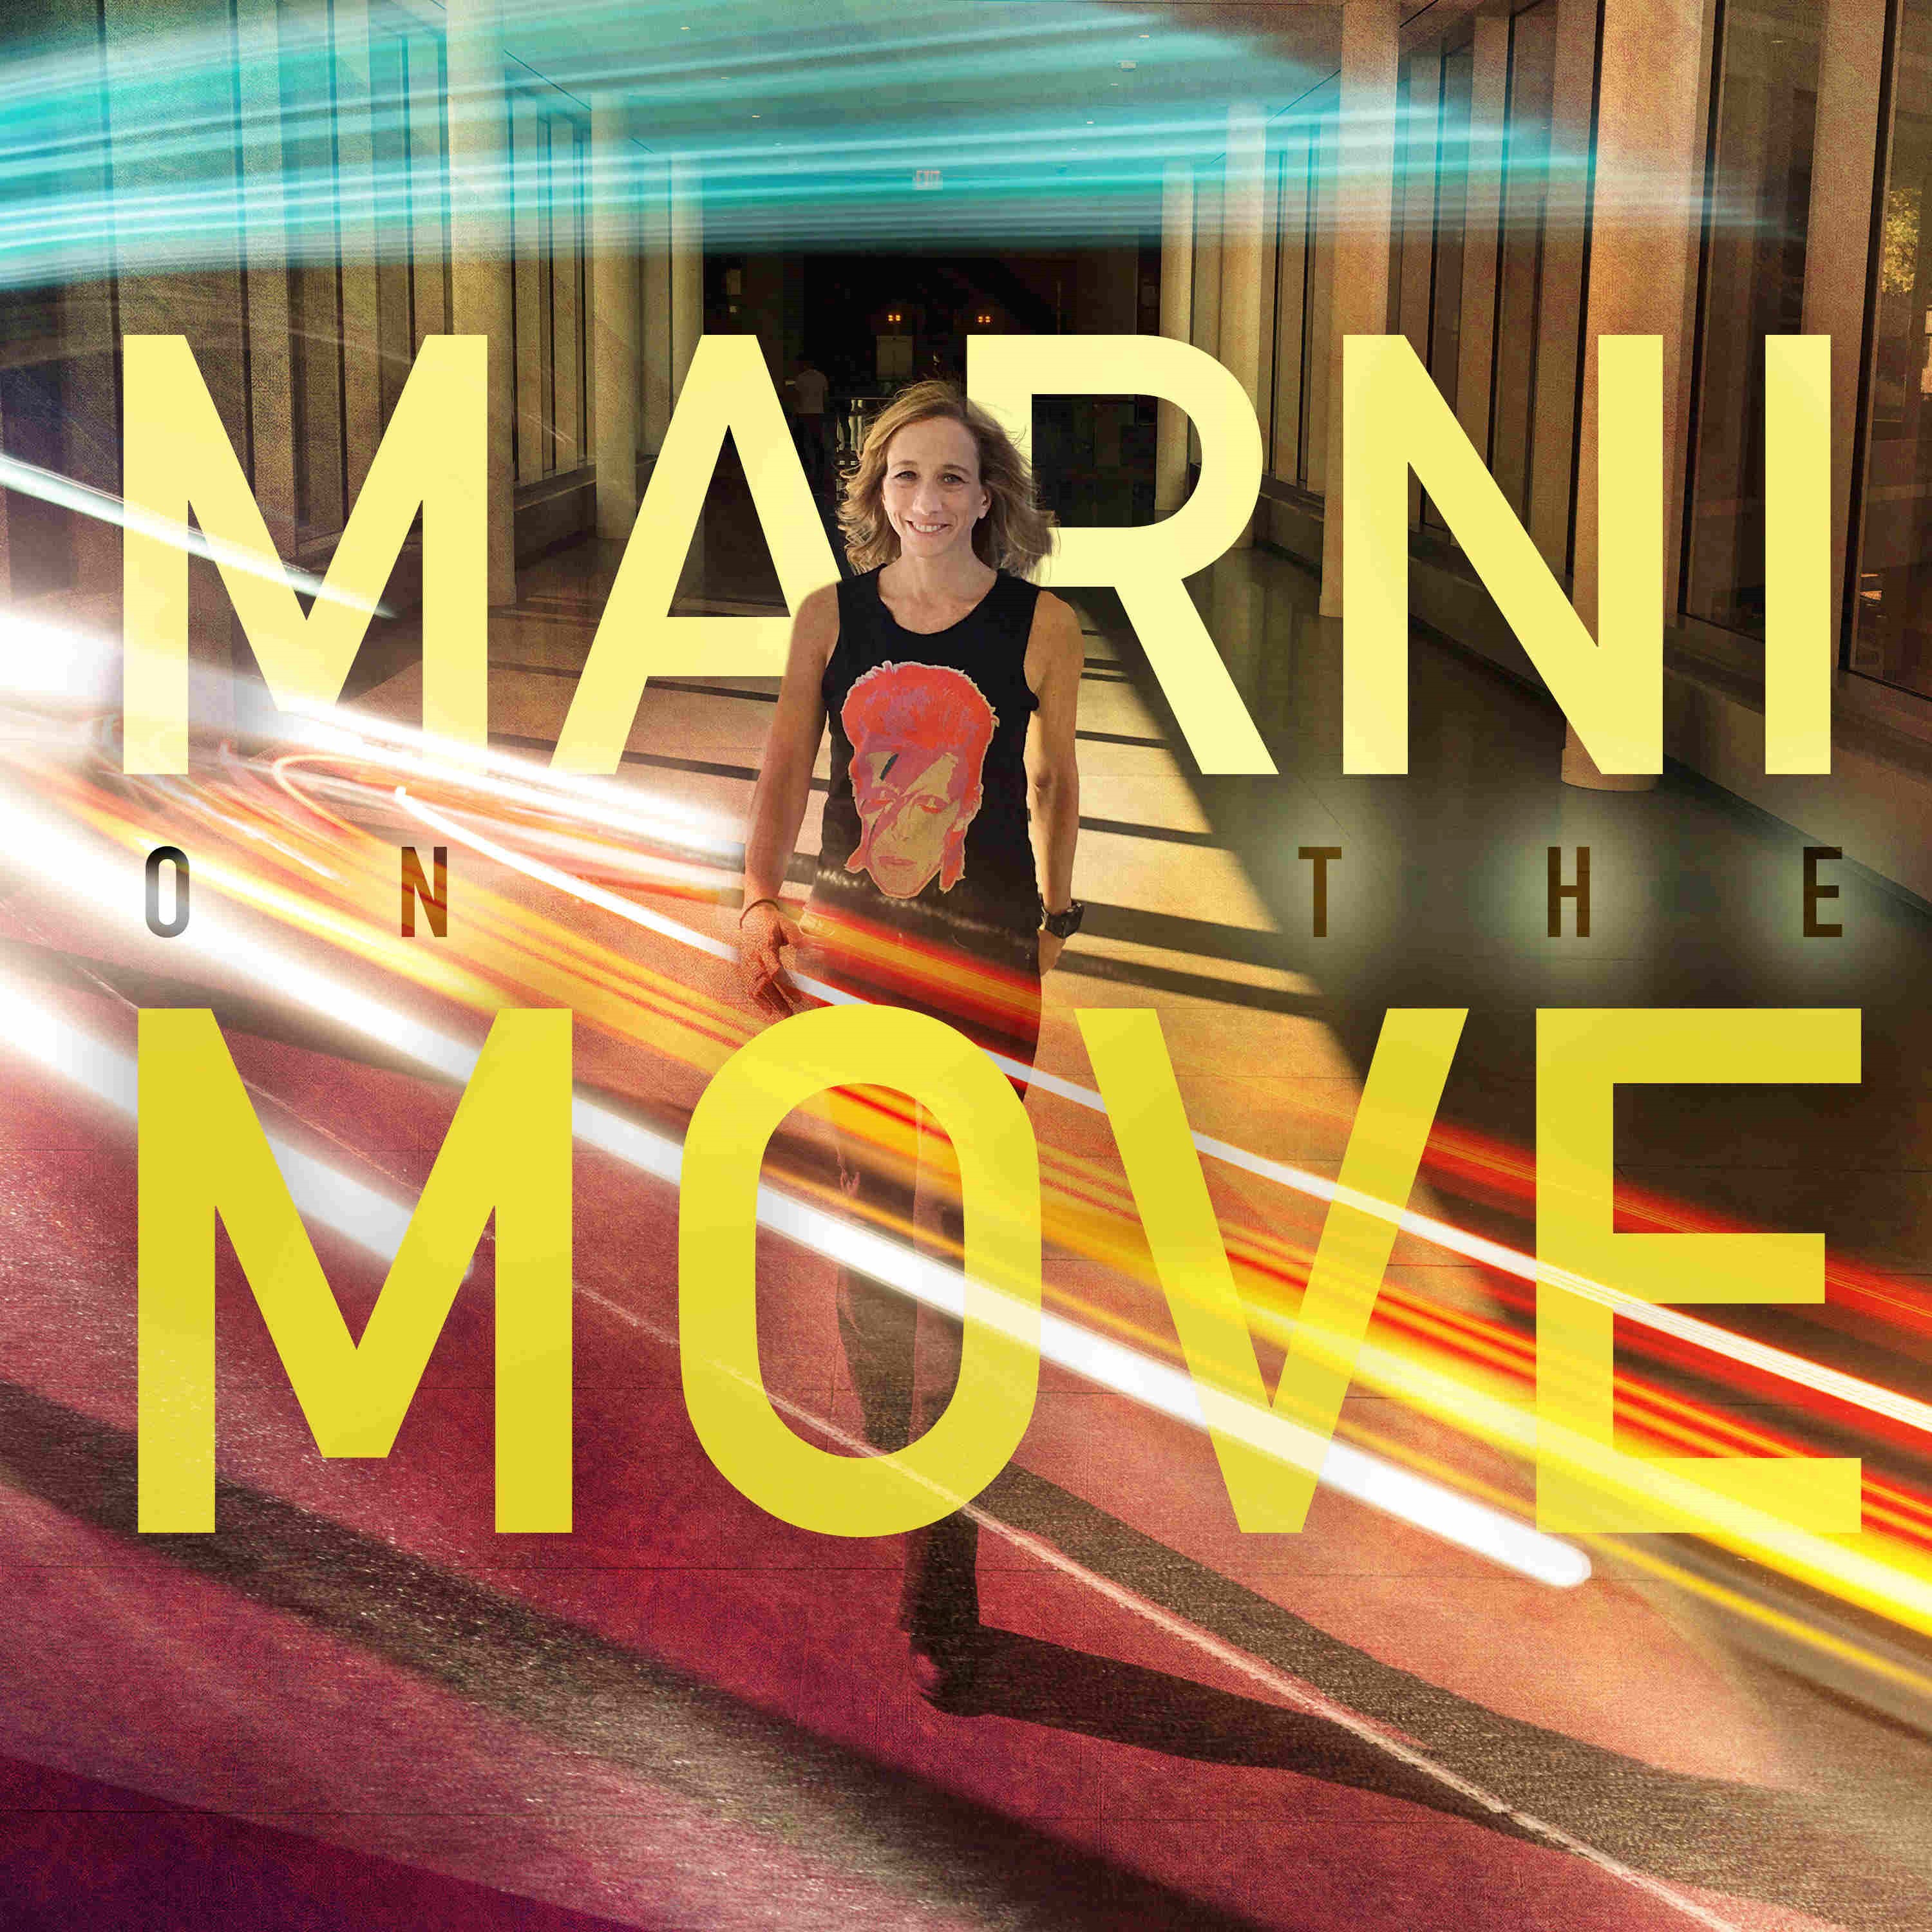 Marni on the Move